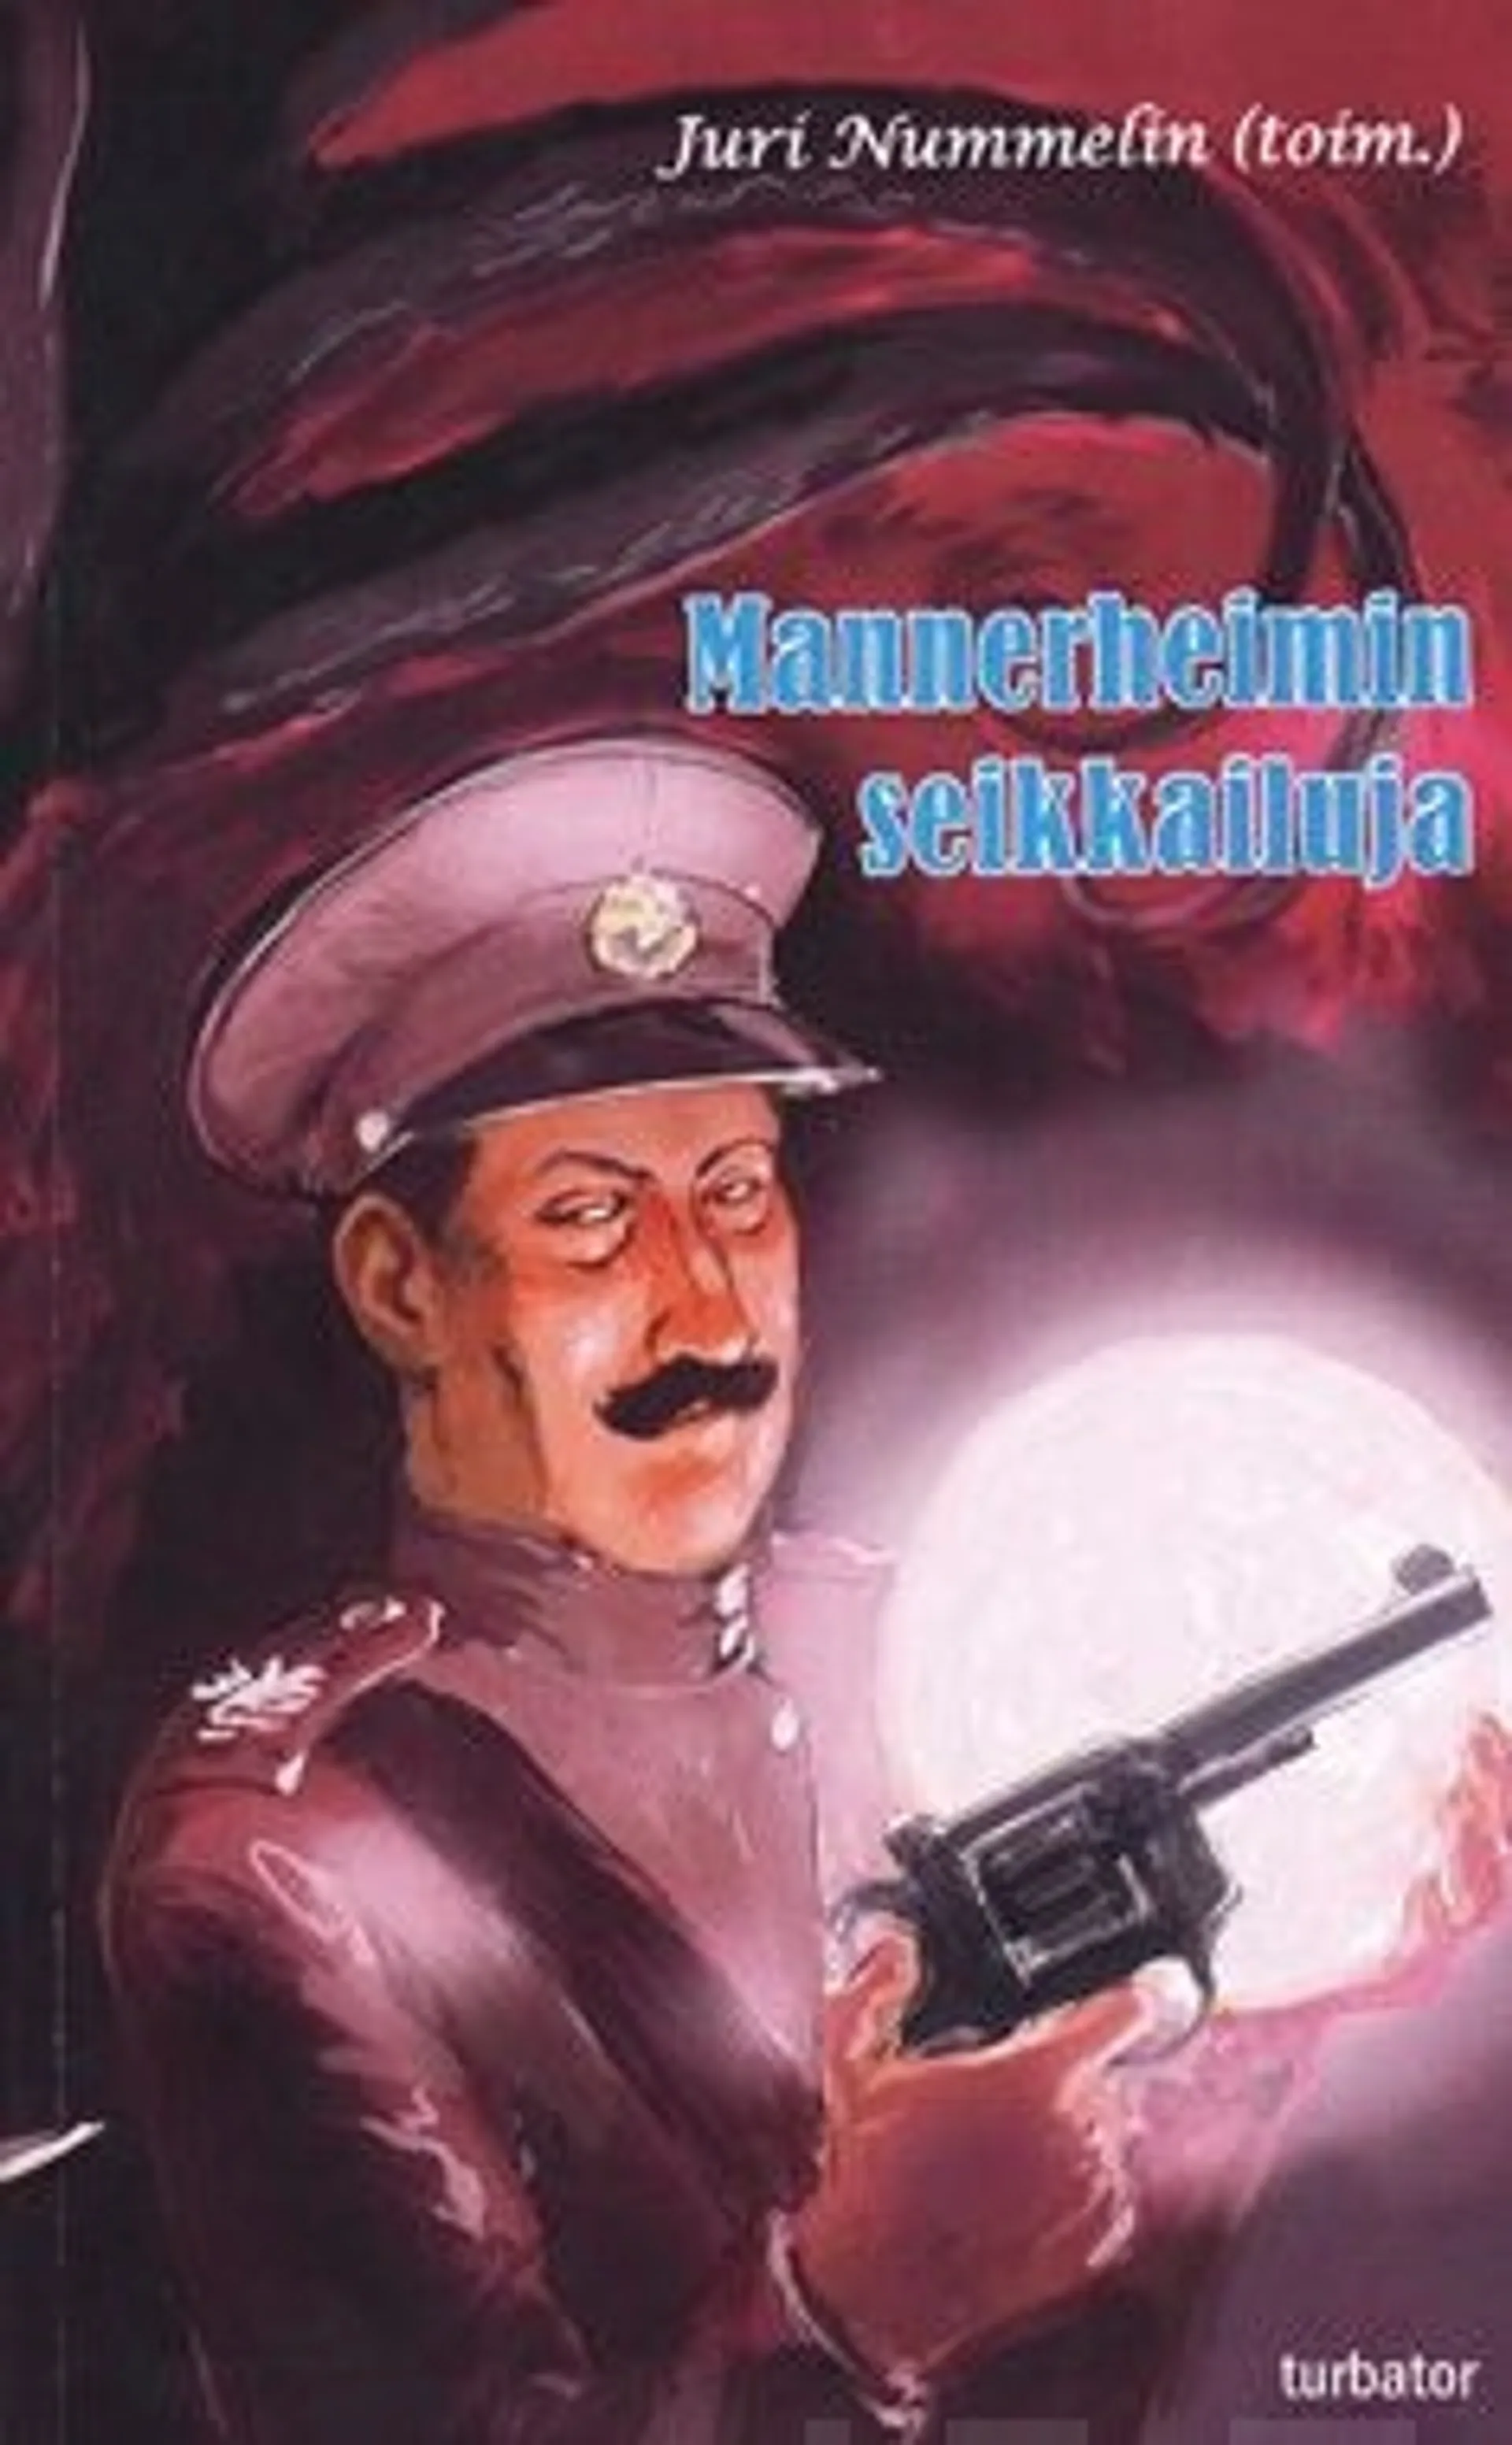 Mannerheimin seikkailuja